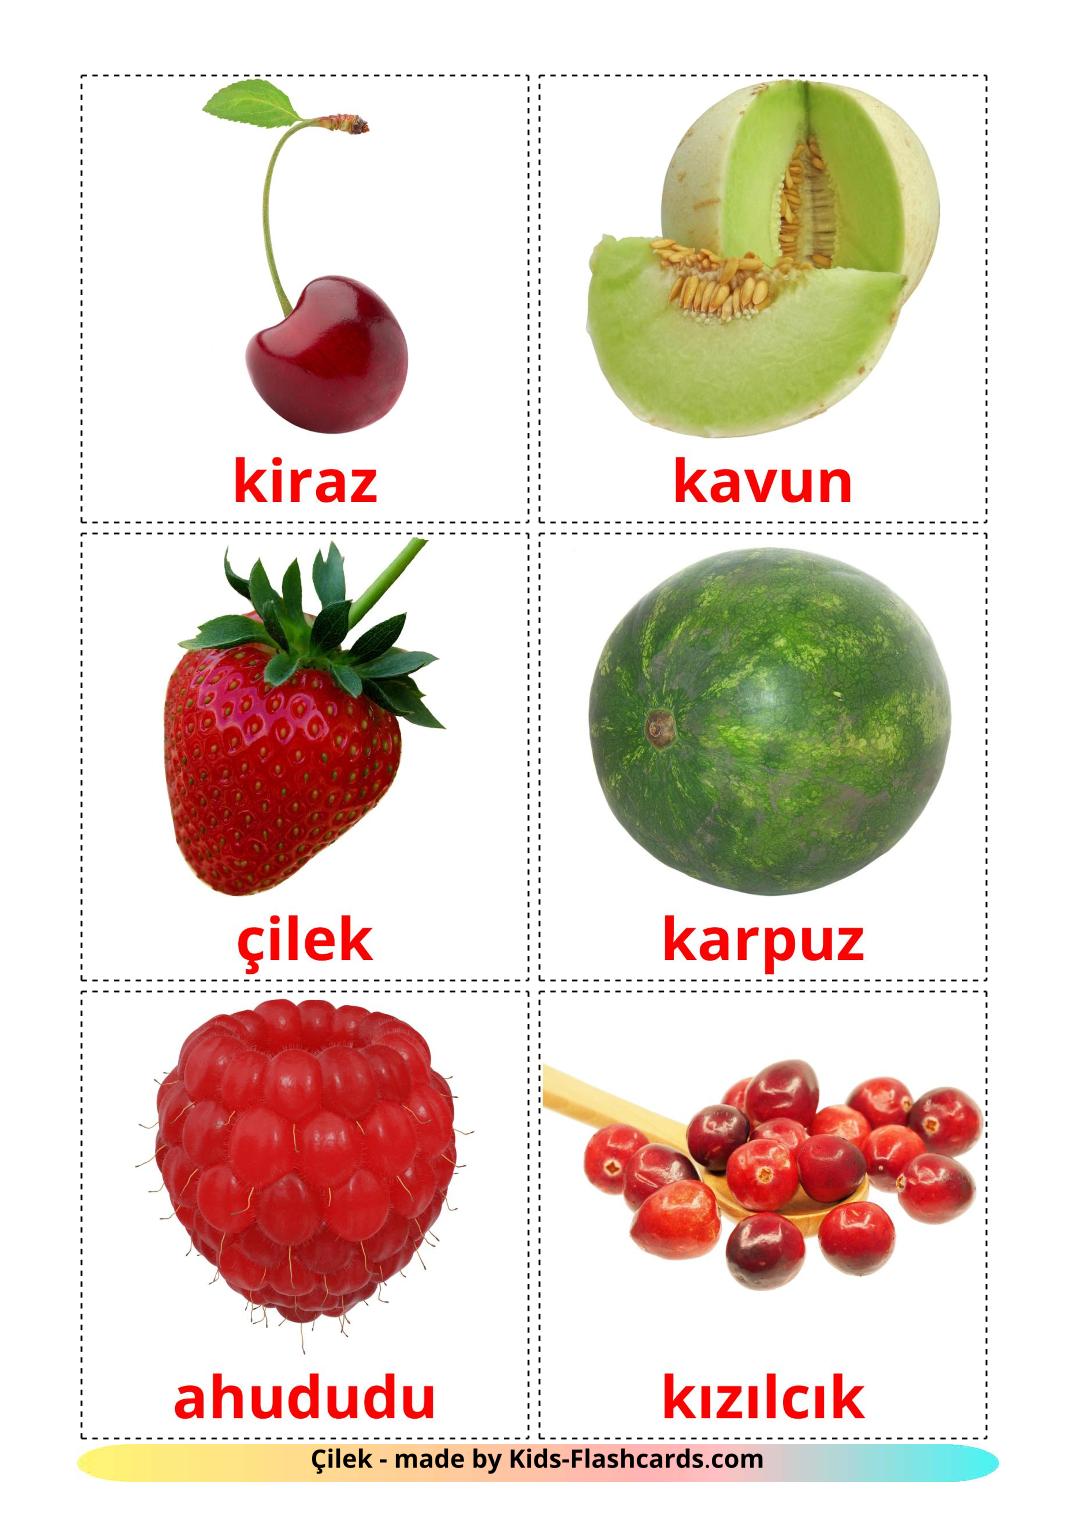 Baies - 11 Flashcards turc imprimables gratuitement